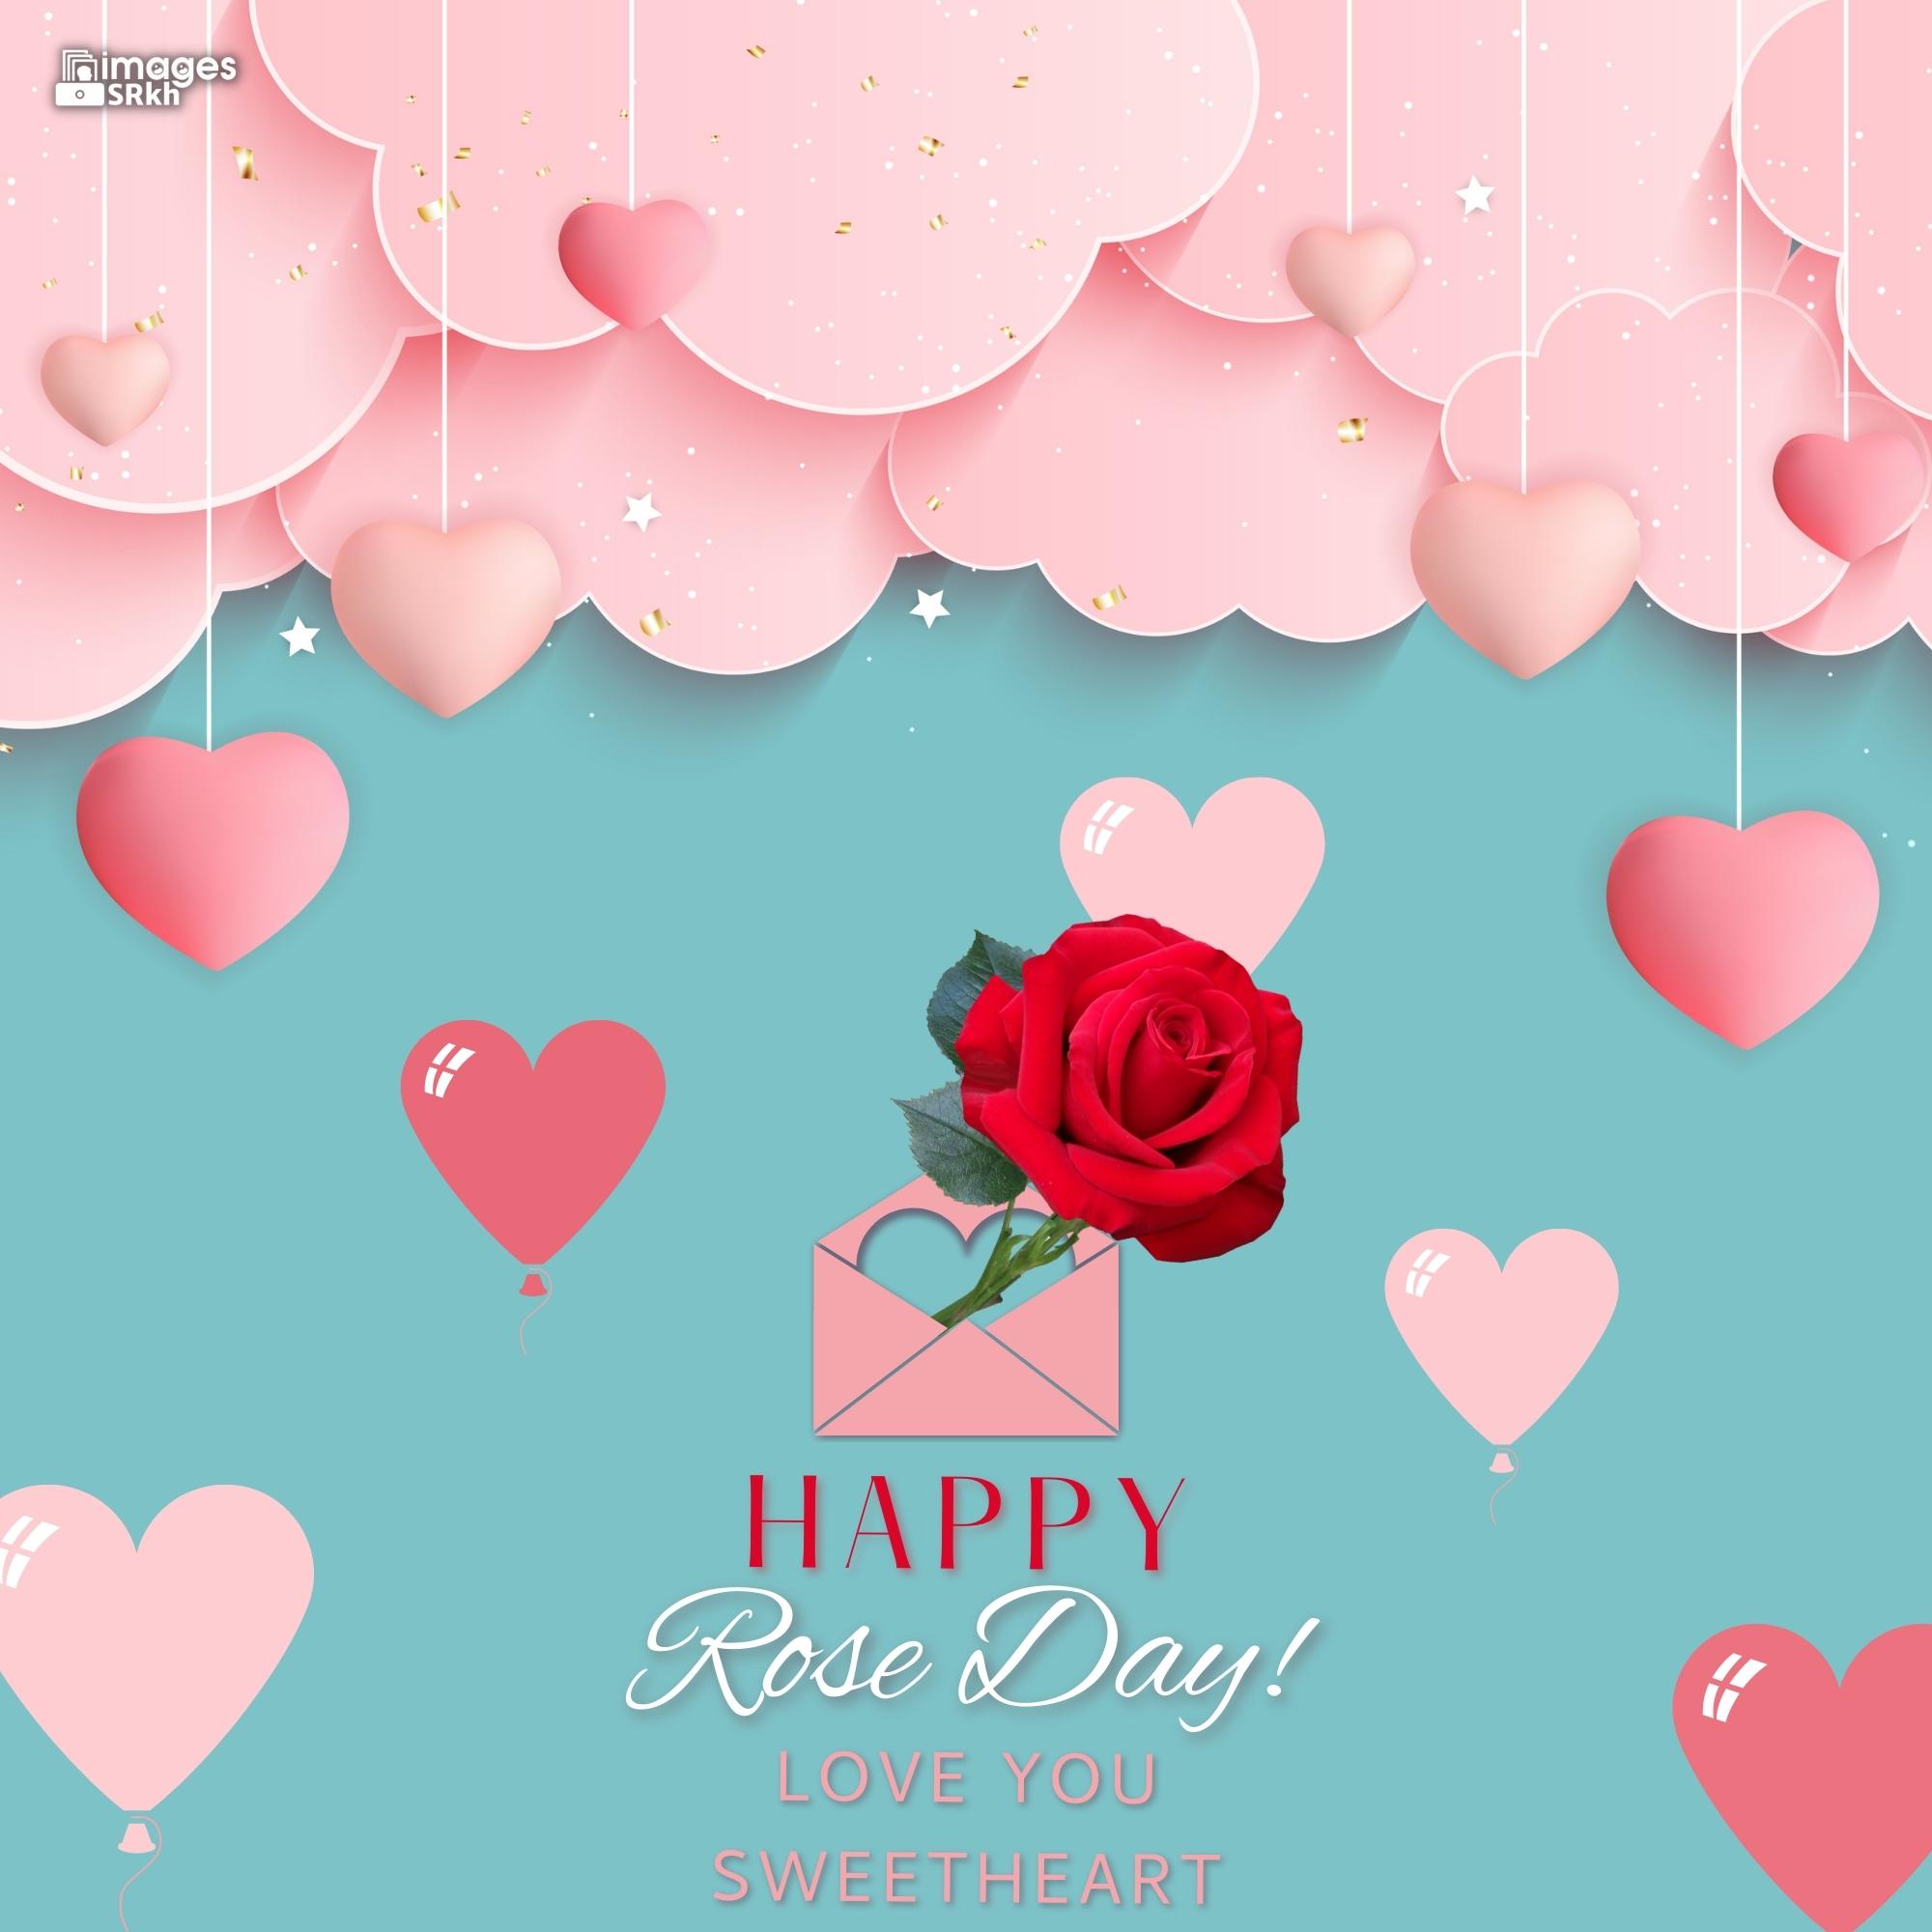 Rose Day Wishing Image Hd Download (5)